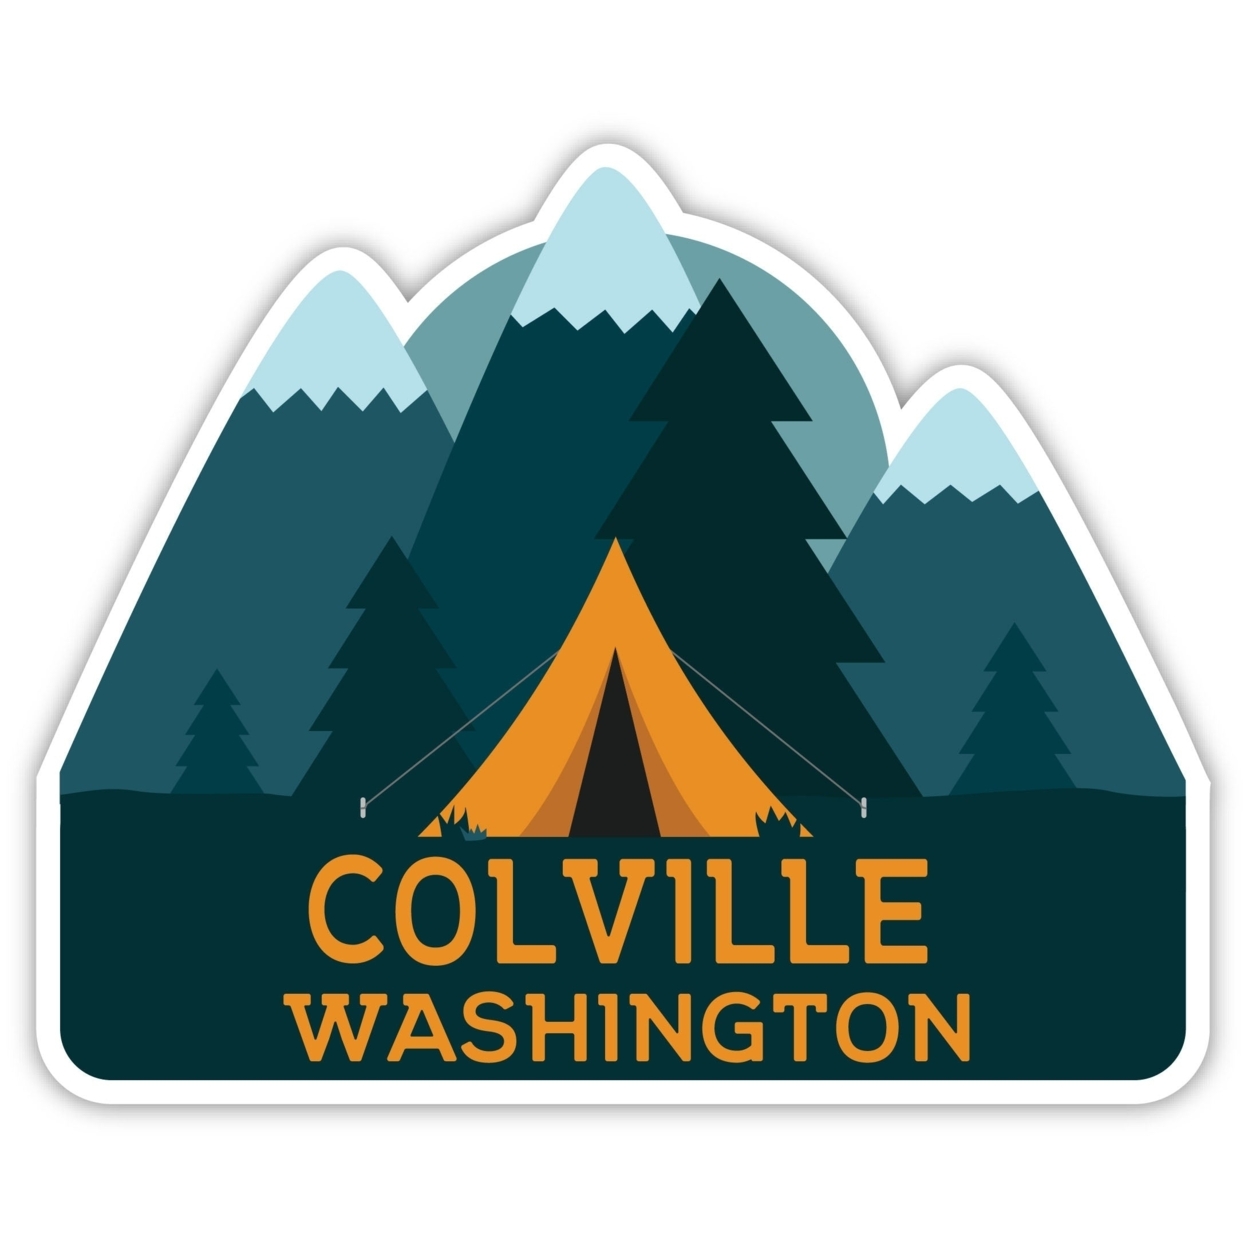 Colville Washington Souvenir Decorative Stickers (Choose Theme And Size) - Single Unit, 8-Inch, Tent